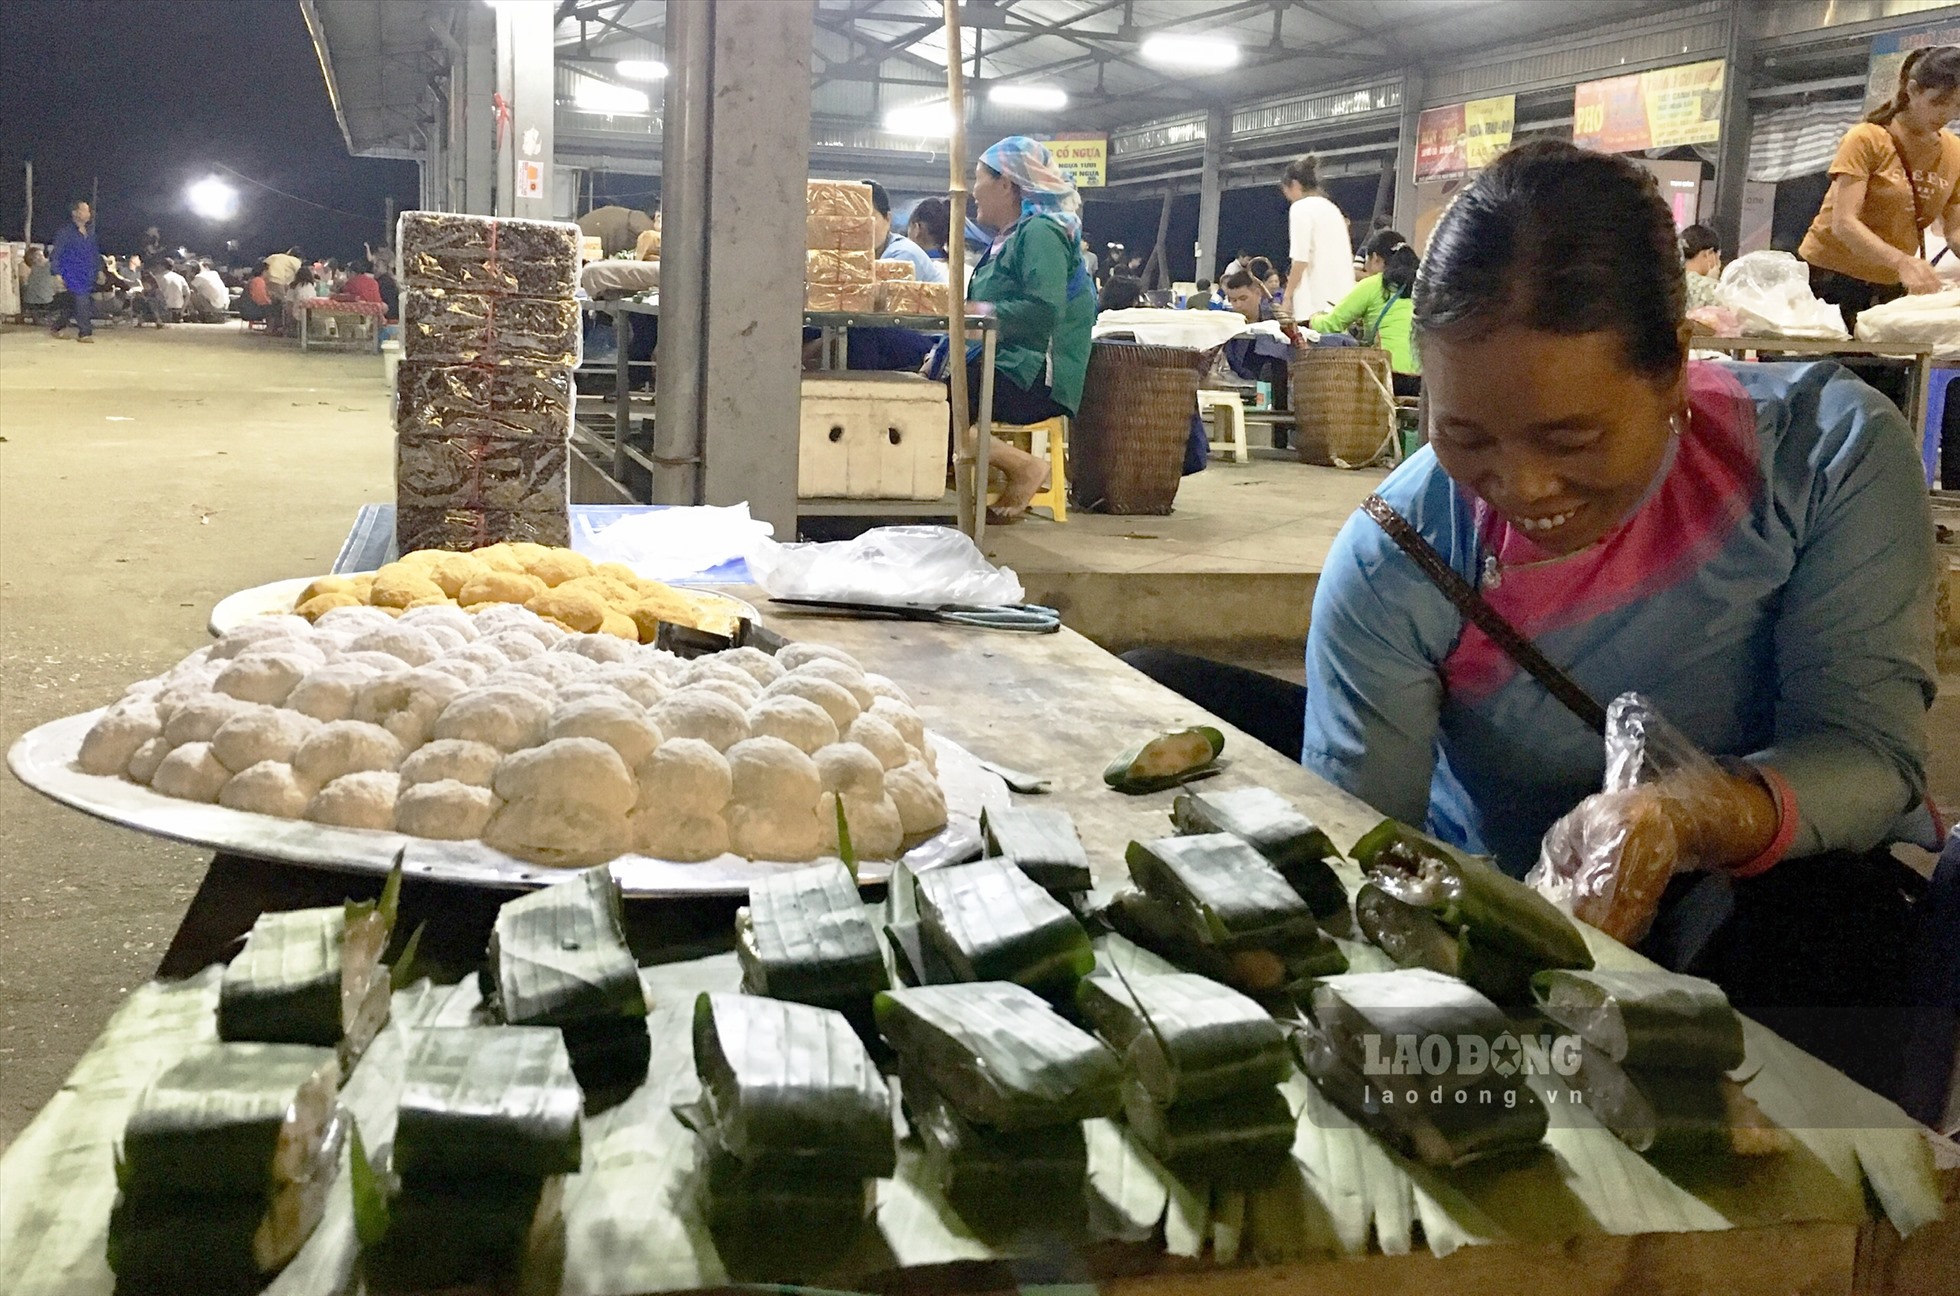 Ngồi bên gian bán bánh truyền thống tại chợ, chị Đèo Thị Nghiệp (40 tuổi, trú tại xã San Thàng) chia sẻ: “Tôi đã đăng ký gian hàng bán bánh truyền thống tại chợ được hơn 1 năm. Mỗi buổi chợ đêm gia đình tôi cũng thu nhập từ 500 - 700 nghìn đồng”.